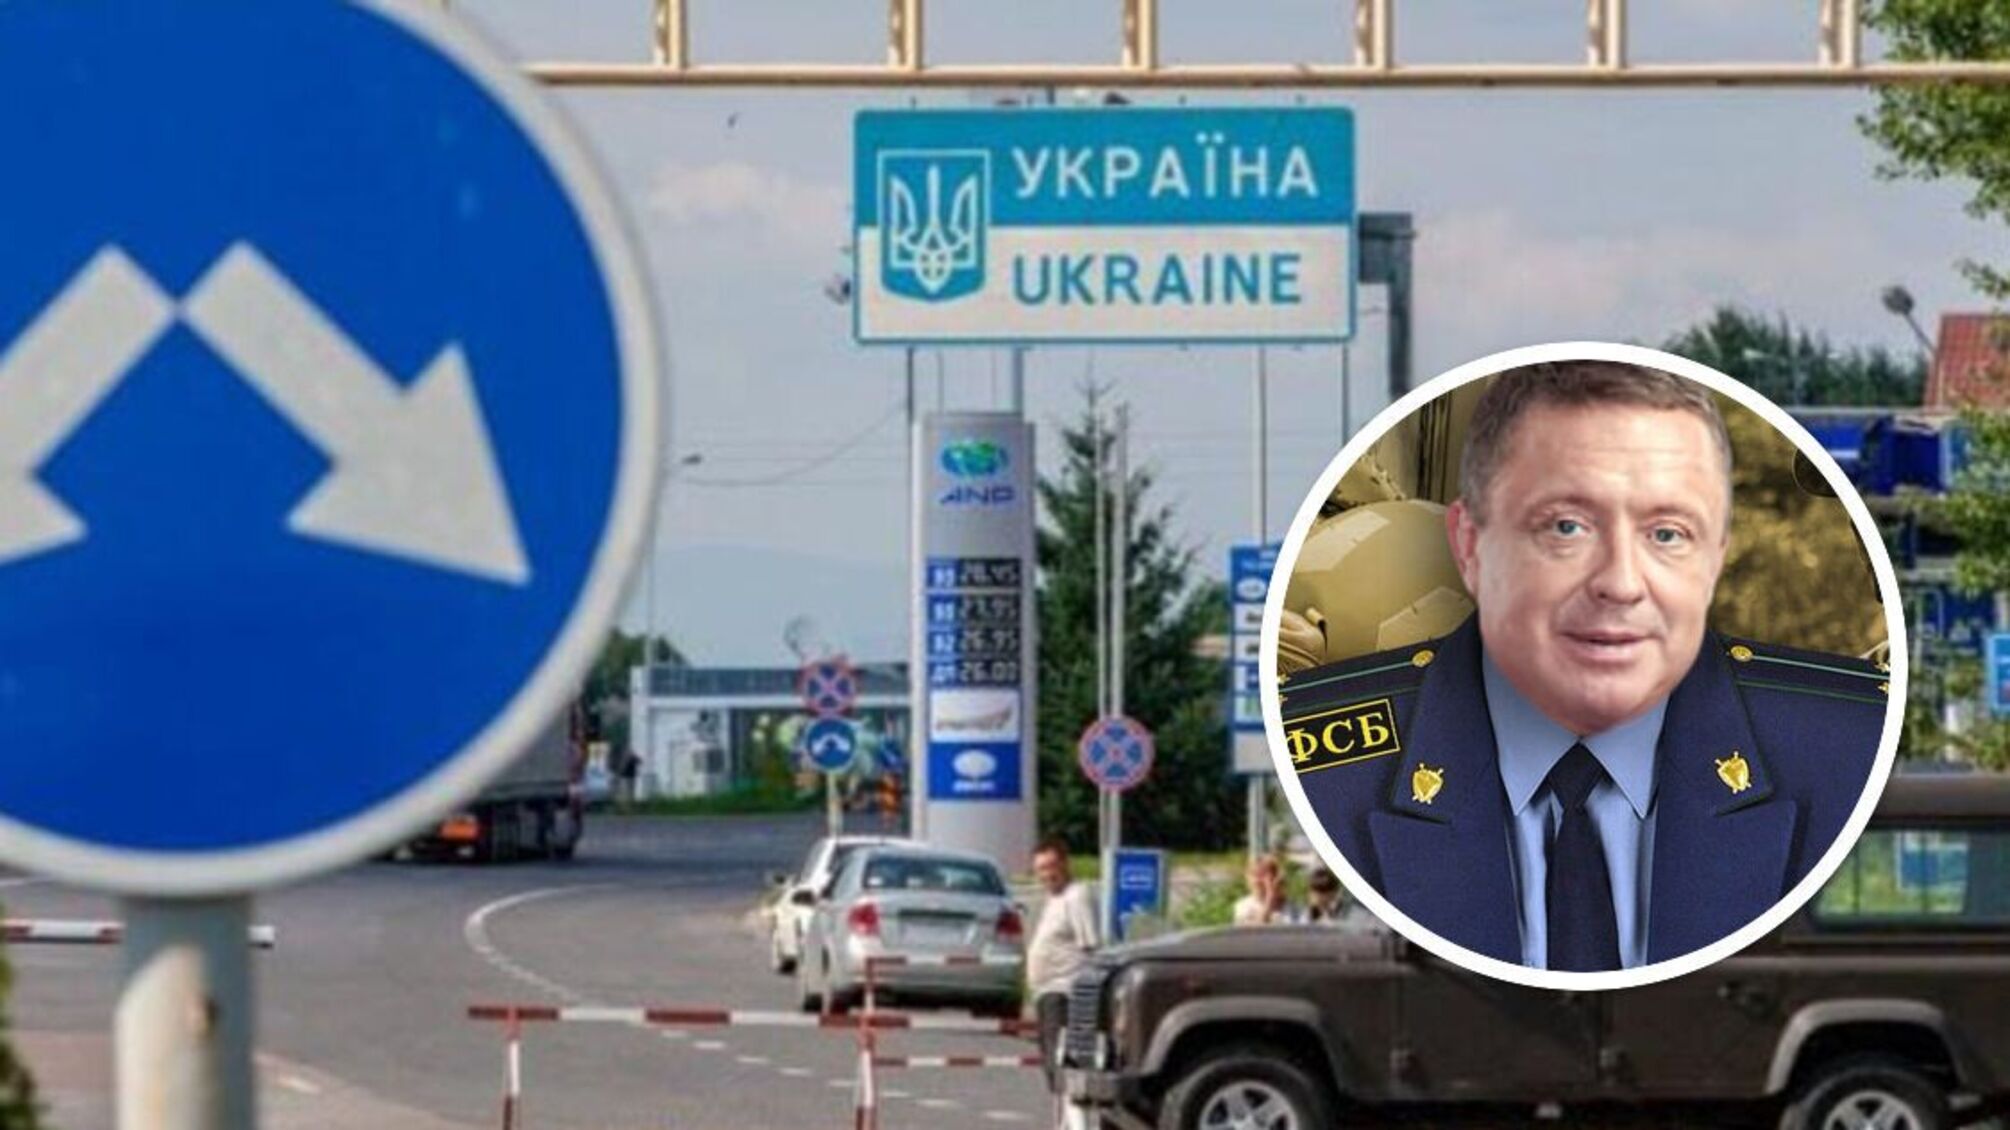 Медведчук, криминал, краденный автомобиль: чем известен бизнесмен Петренко, который 'нагрел' ВСУ на 1,7 млрд